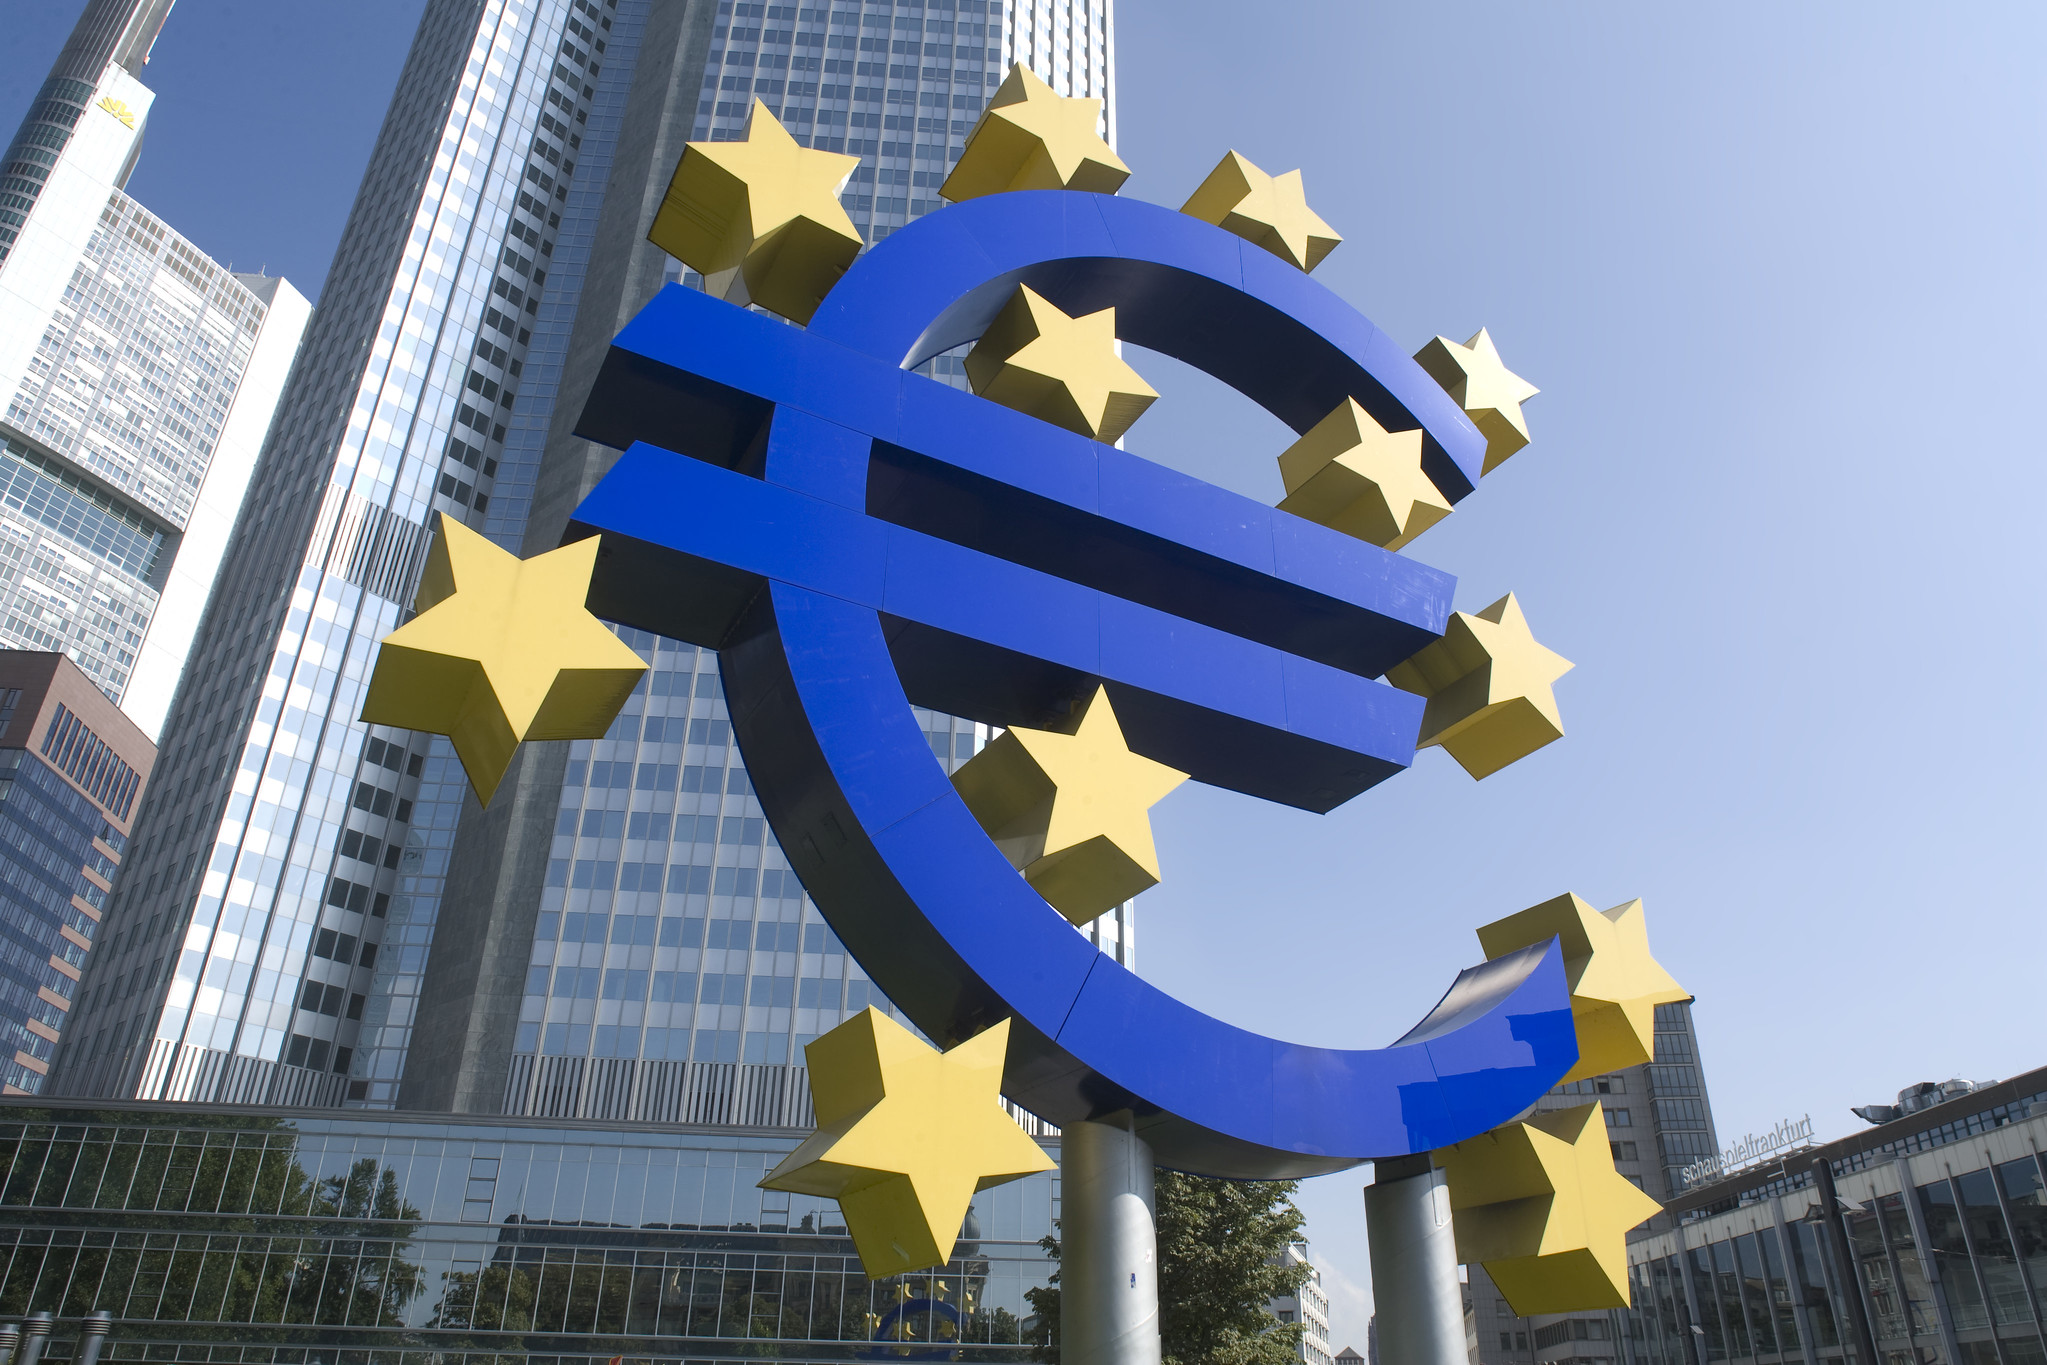 Επιτόκια: Αμετάβλητο το κόστος δανεισμού από την ΕΚΤ